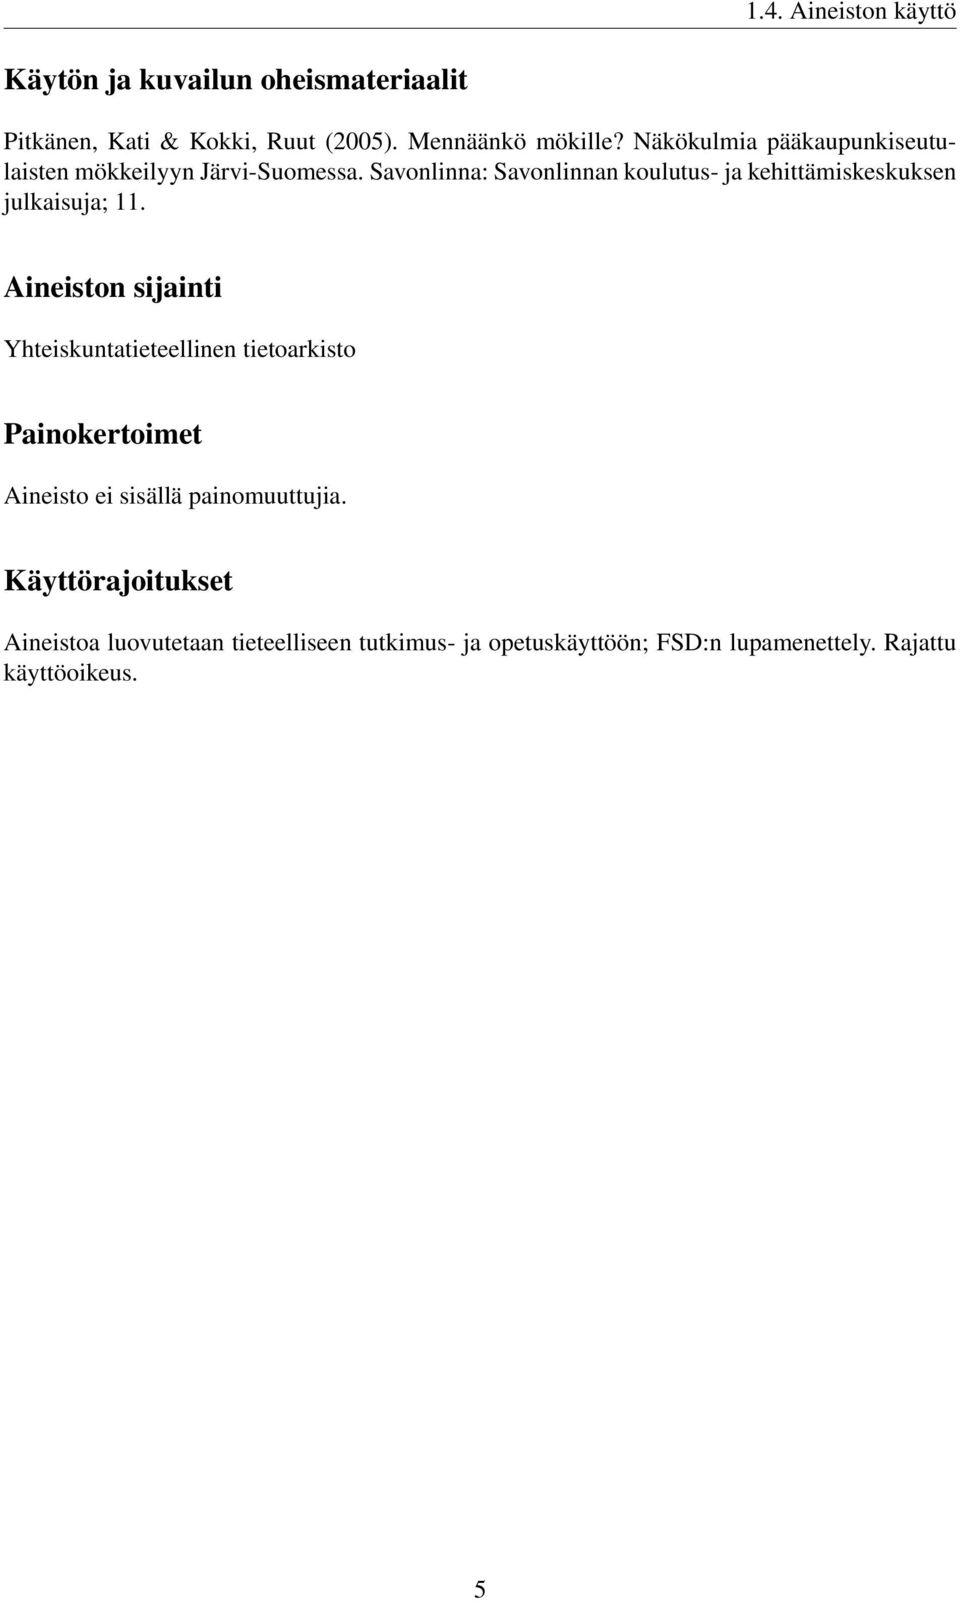 Savonlinna: Savonlinnan koulutus- ja kehittämiskeskuksen julkaisuja; 11.